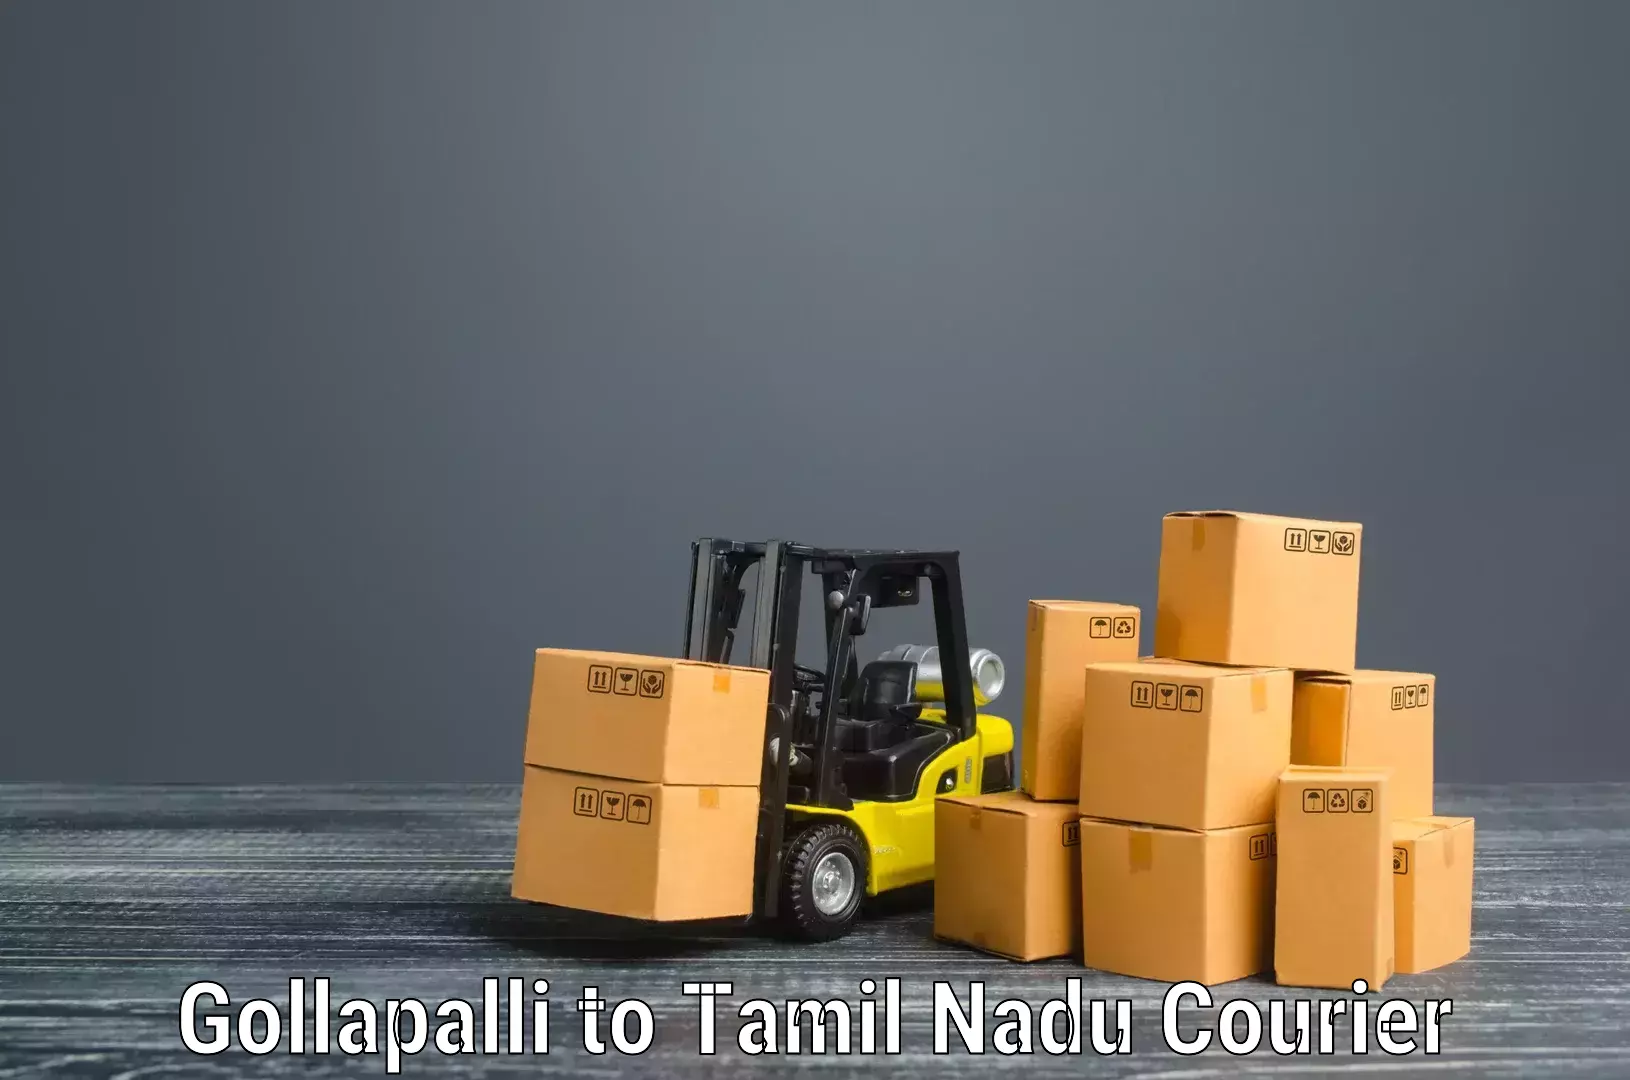 Personalized furniture moving Gollapalli to Rathinasabapathy Puram